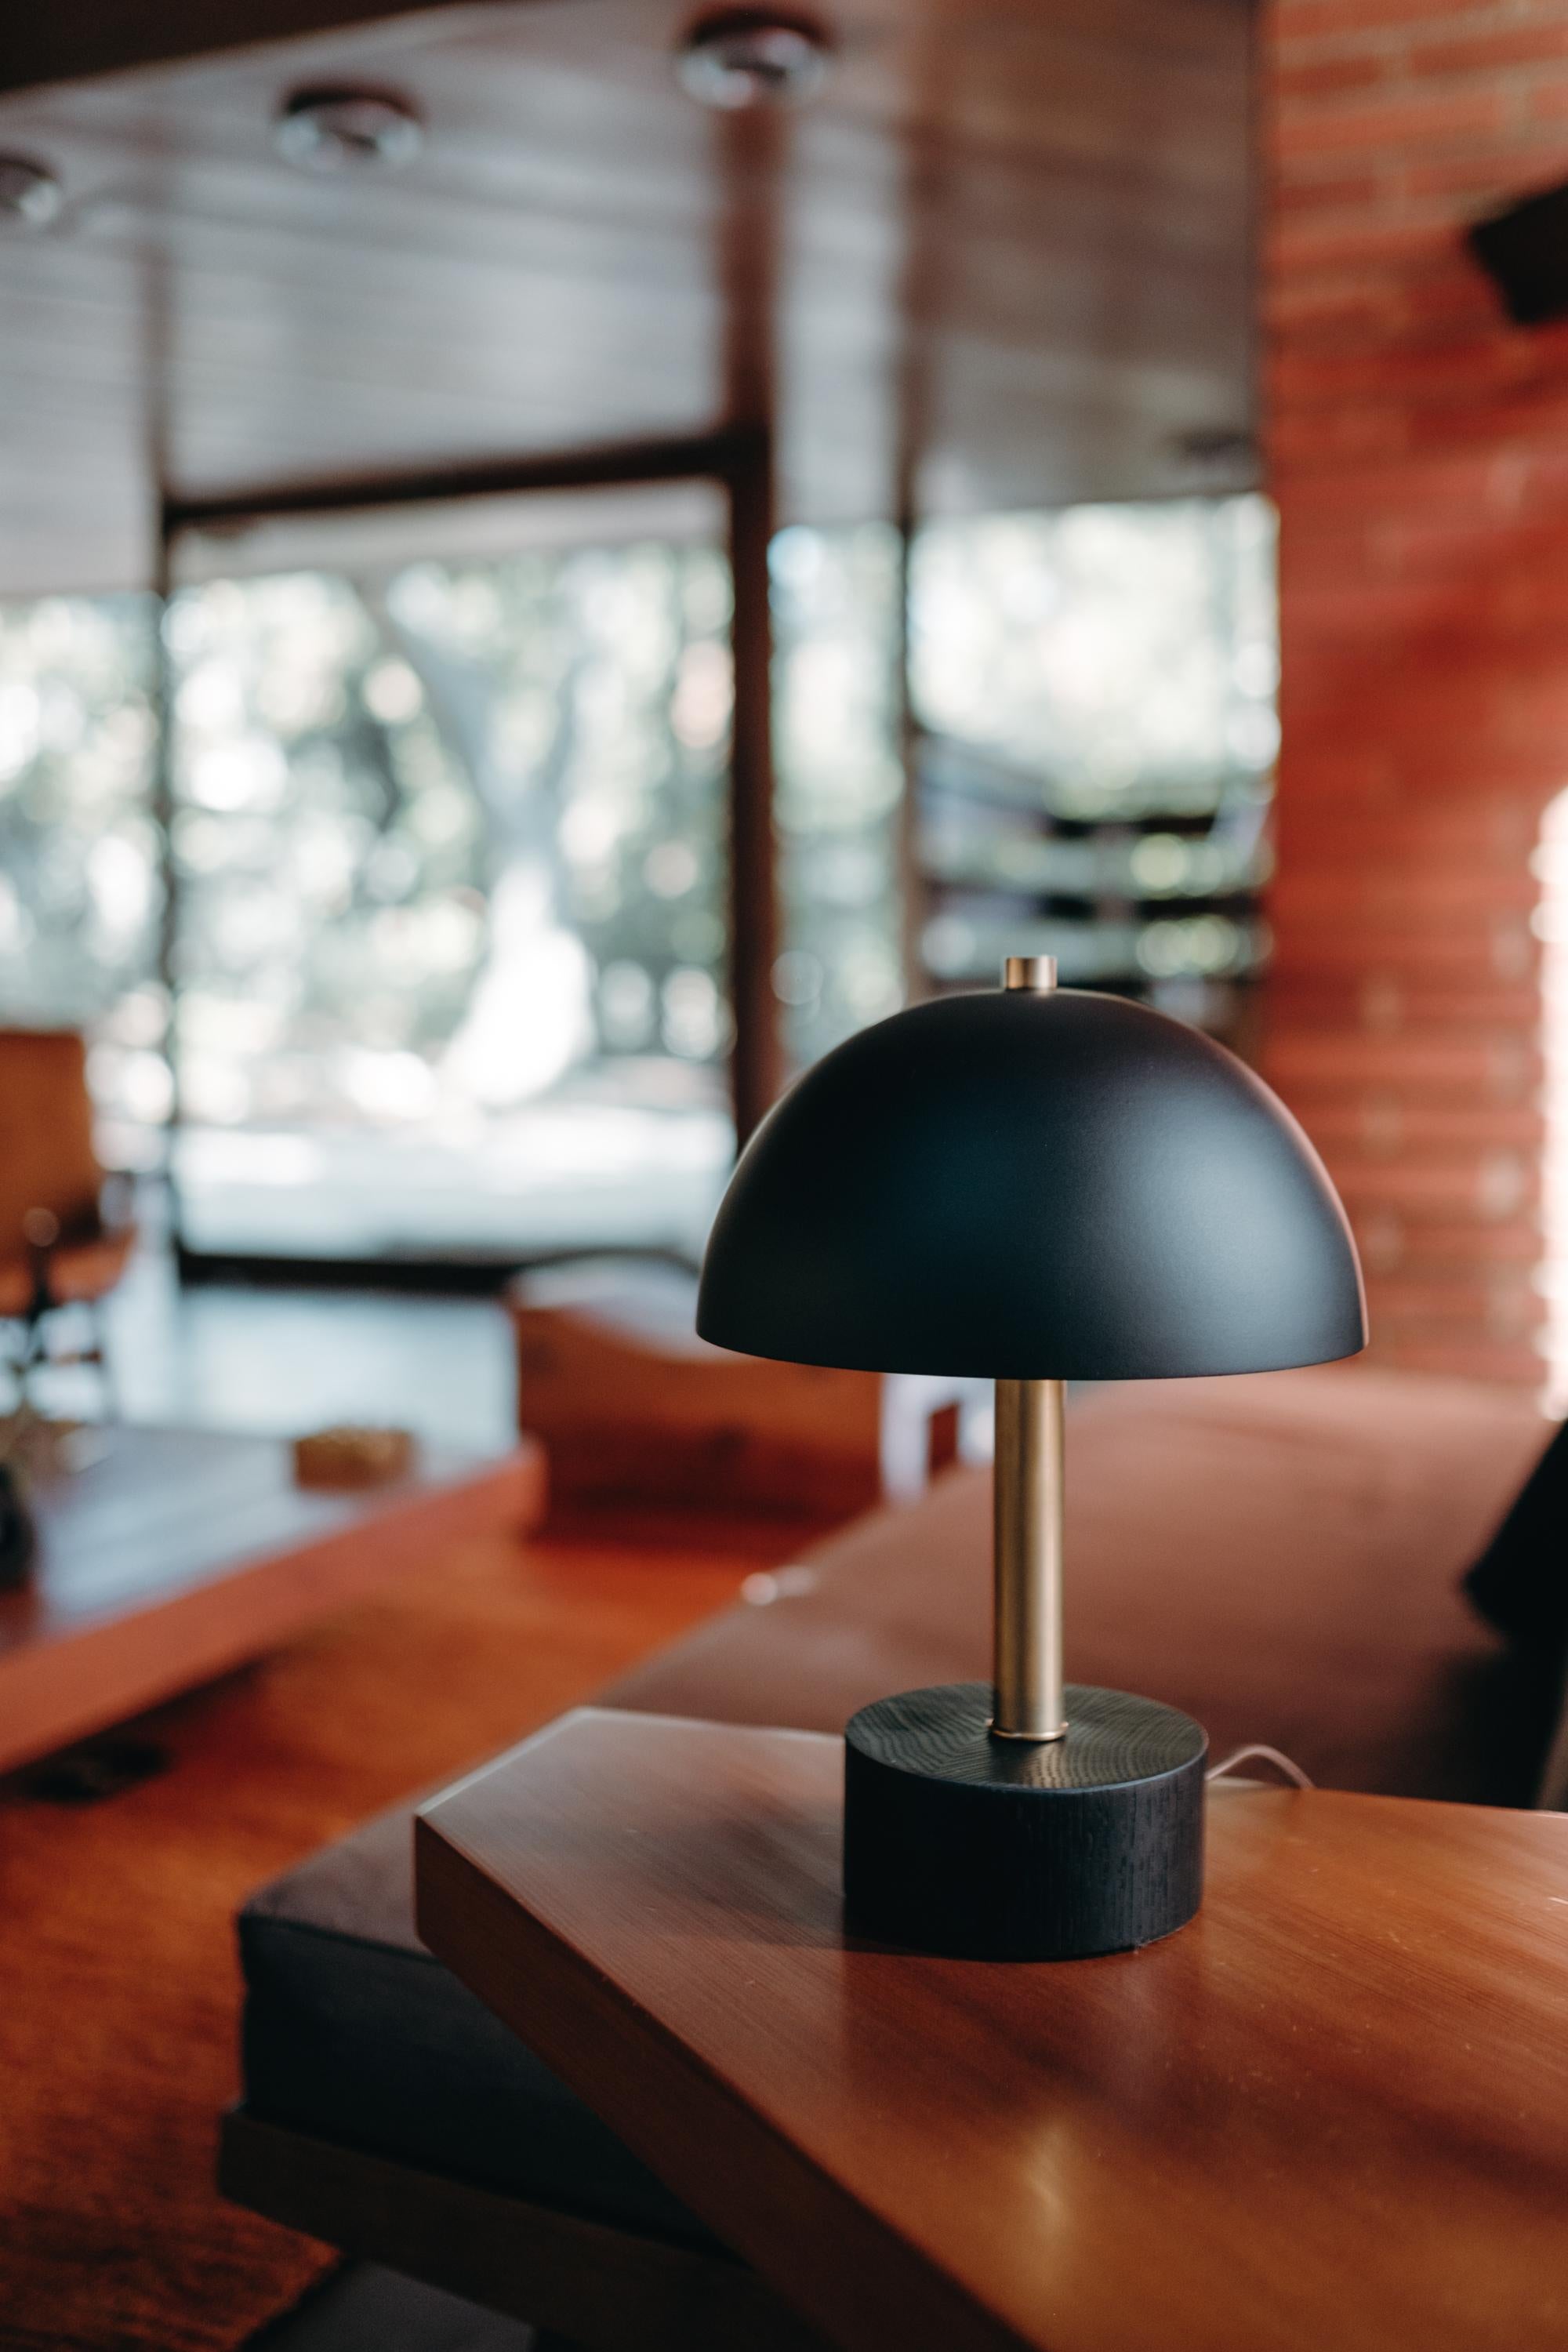 Lampe de table 'Nena' en métal noir et bois par Alvaro Benitez. 

Fabriquées à la main par Alvaro Benitez, designer et professionnel de l'éclairage basé à Los Angeles, ces lampes de bureau très raffinées rappellent les designs italiens emblématiques